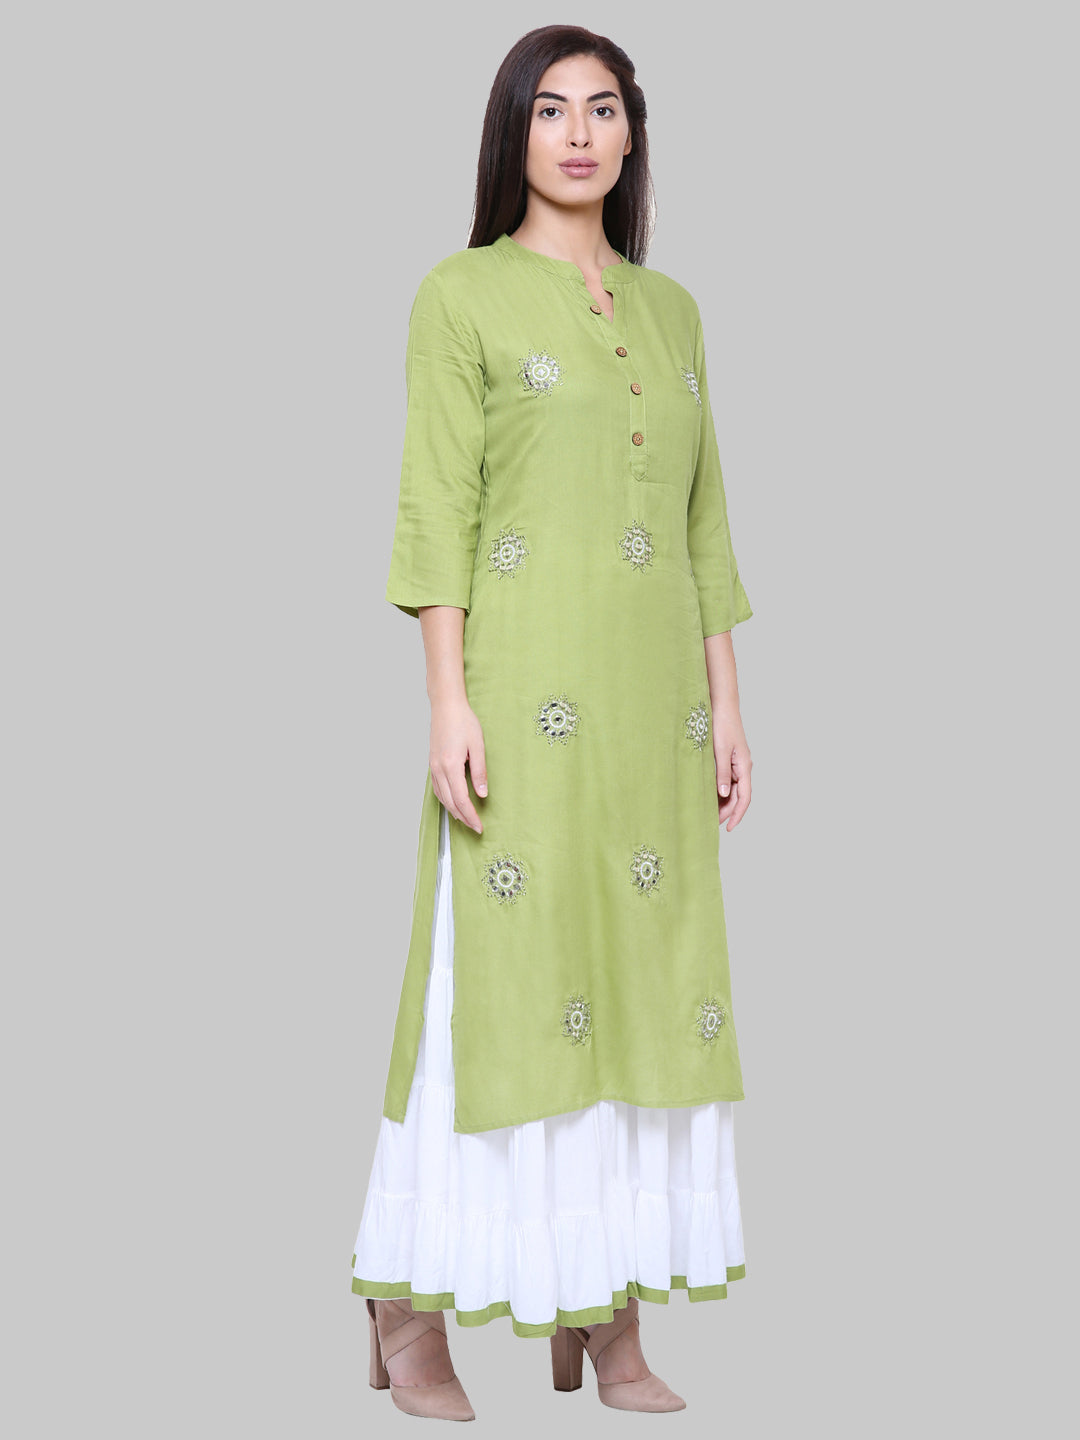 Saundarya Women's Olive Green Kurta with White Sharara set